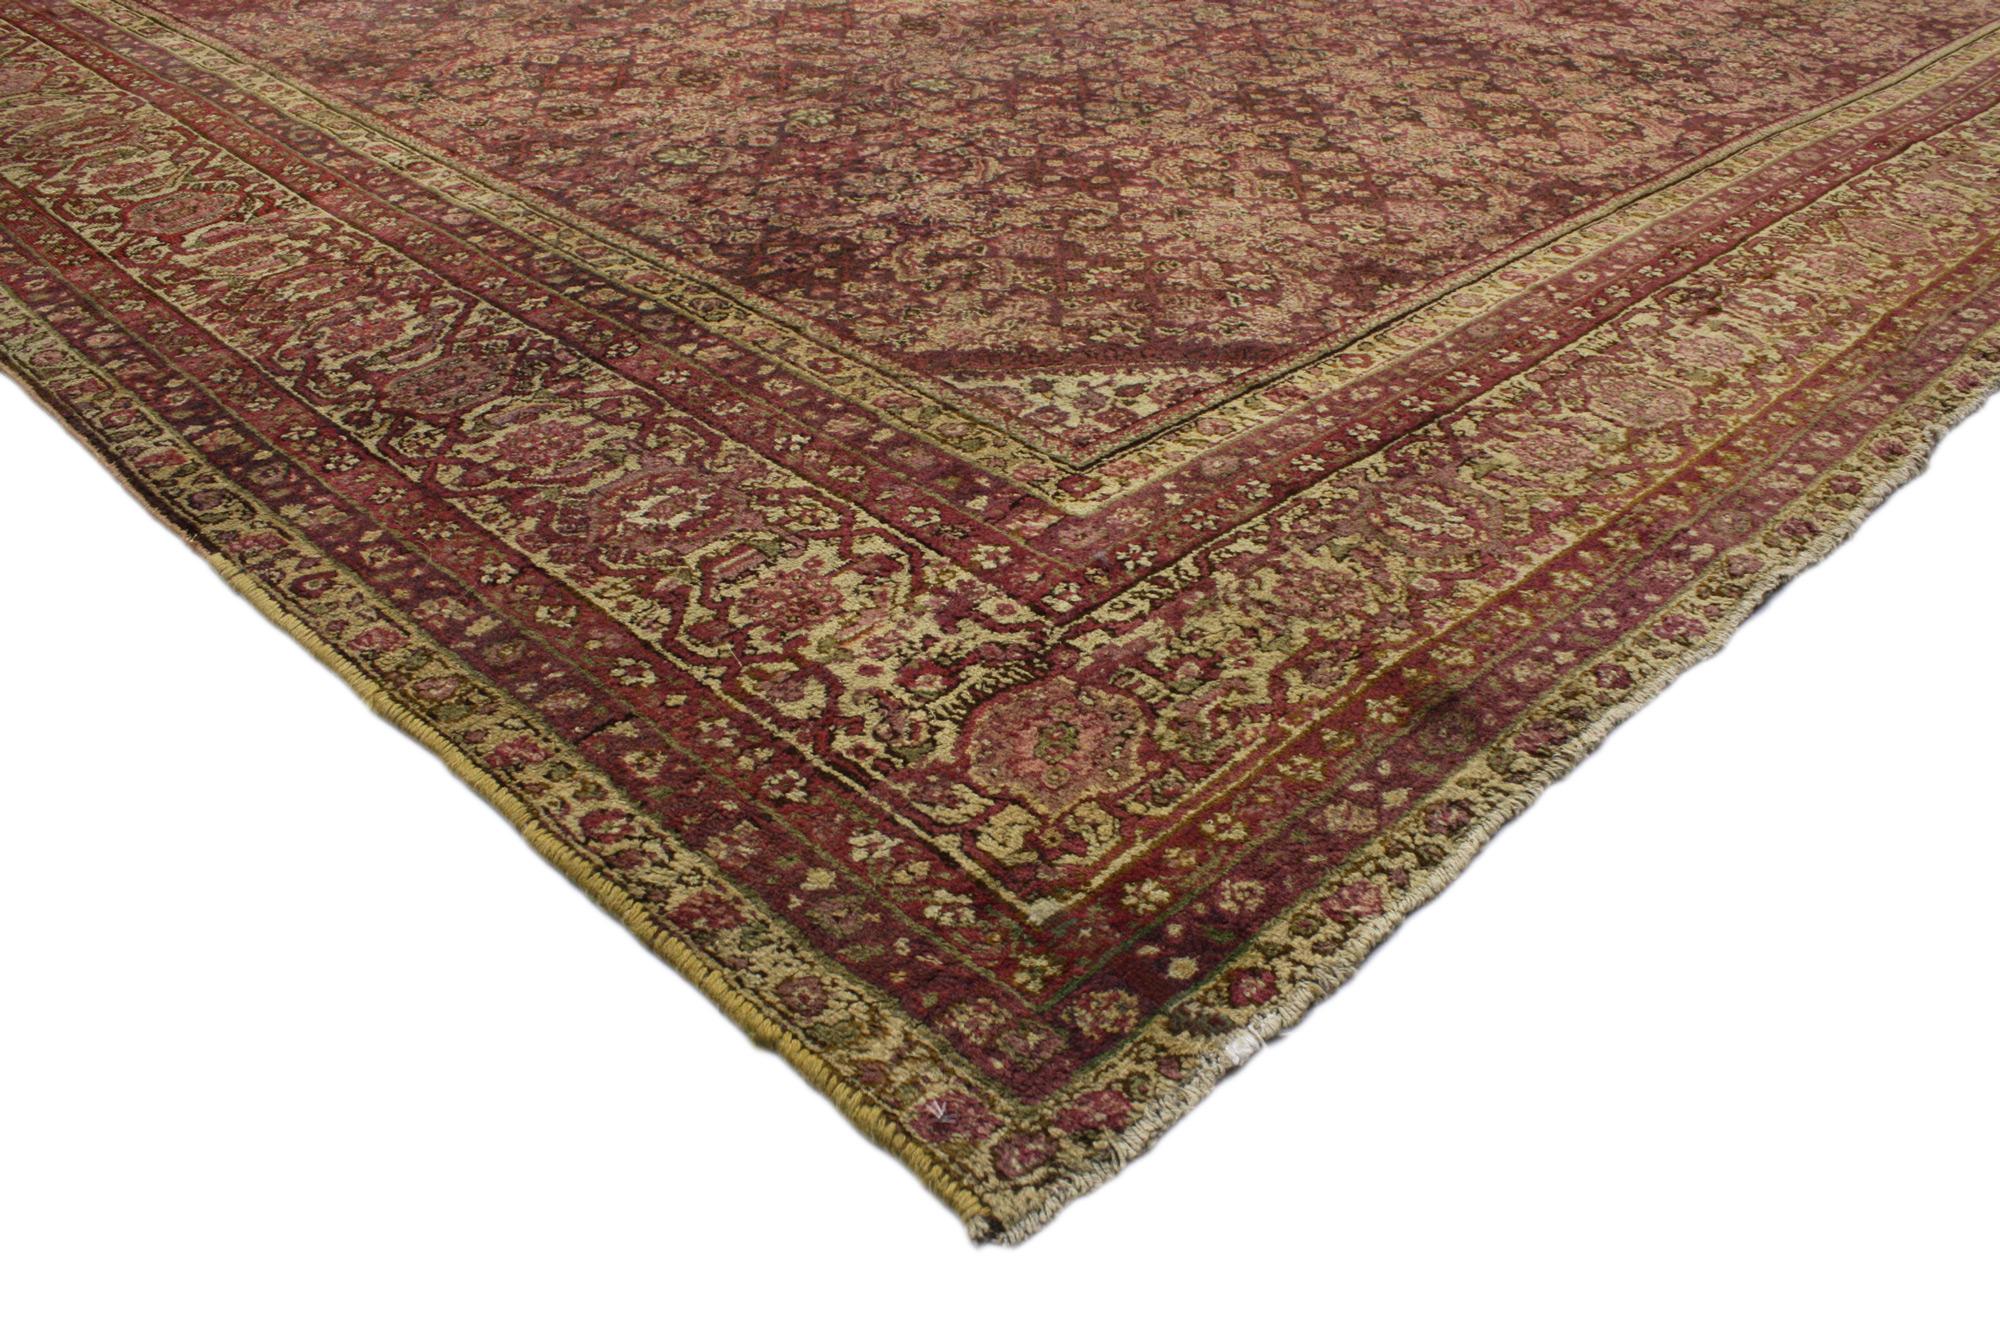 71600 Übergroßer antiker indischer Agra-Teppich, 16'00 x 28'00. 
Dieser übergroße, antike indische Agra-Teppich versprüht königlichen Charme mit unglaublichen Details und Texturen und ist eine fesselnde Vision von gewebter Schönheit. Das